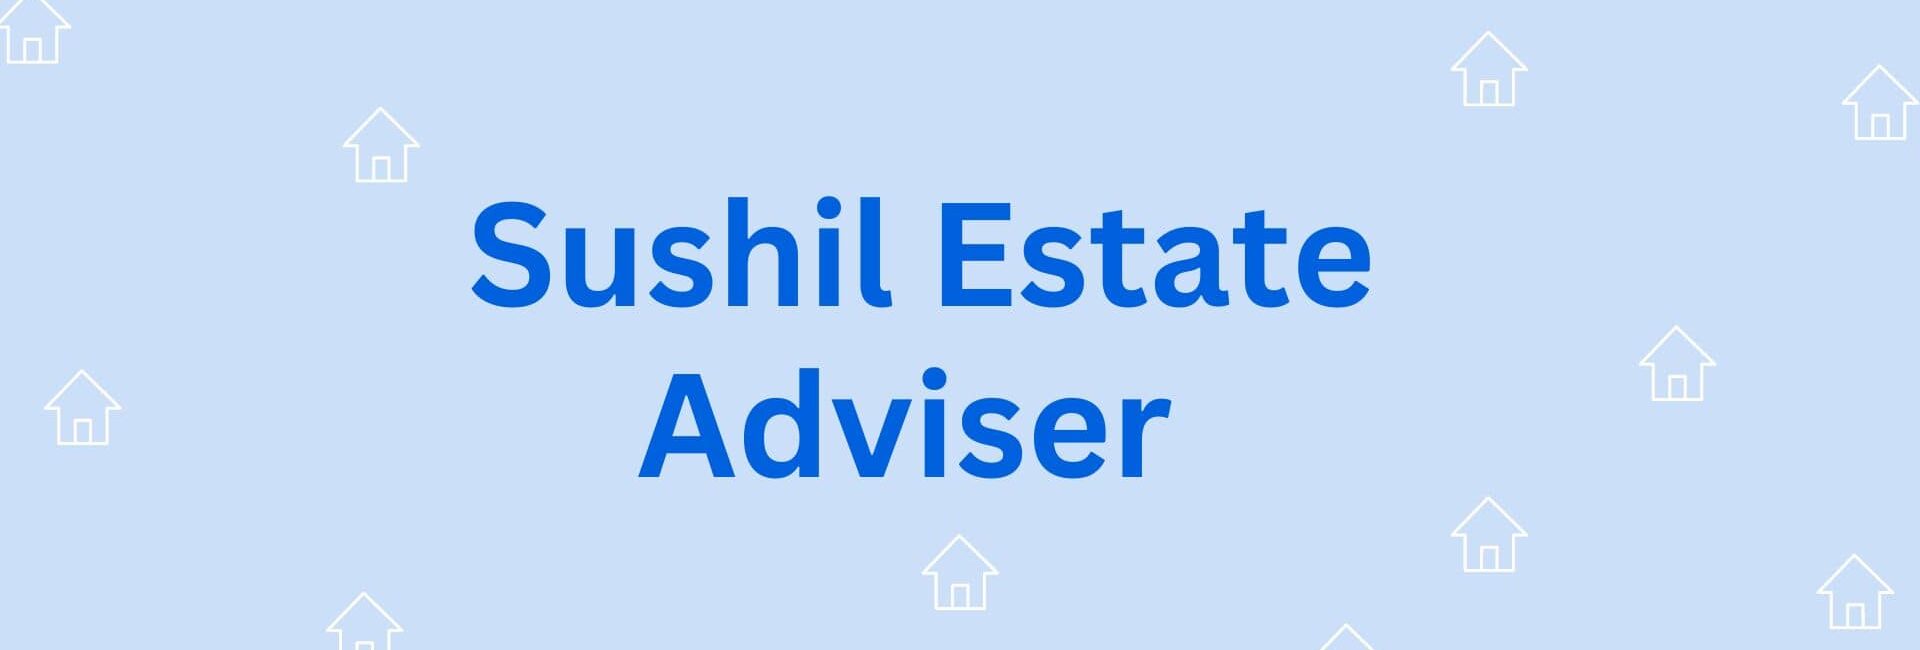 Sushil Estate Adviser - Property Dealer in Hisar